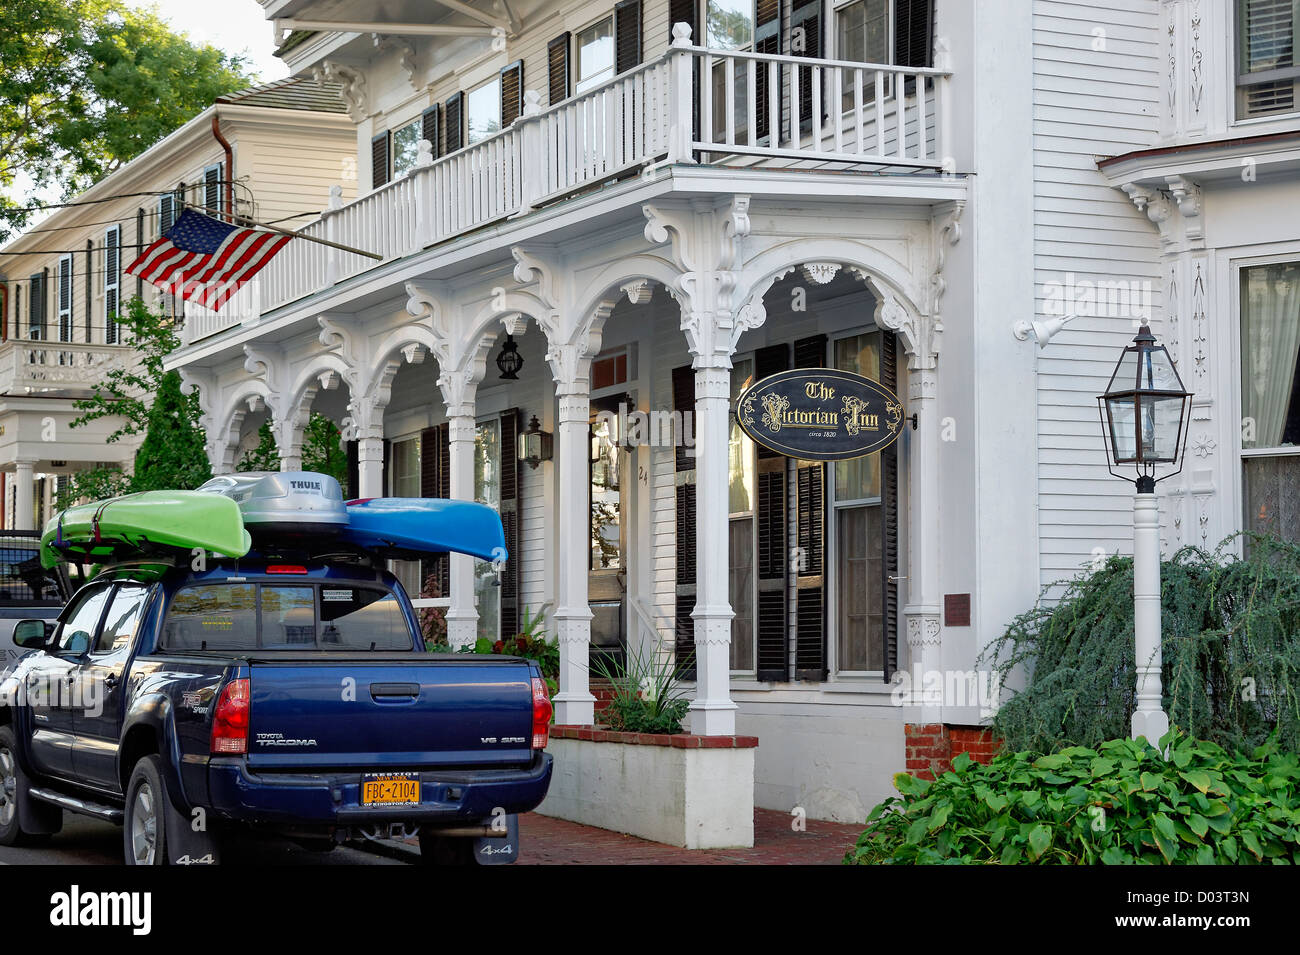 The Victorian Inn, Edgartown, Martha's Vineyard, Massachusetts, USA Stock Photo